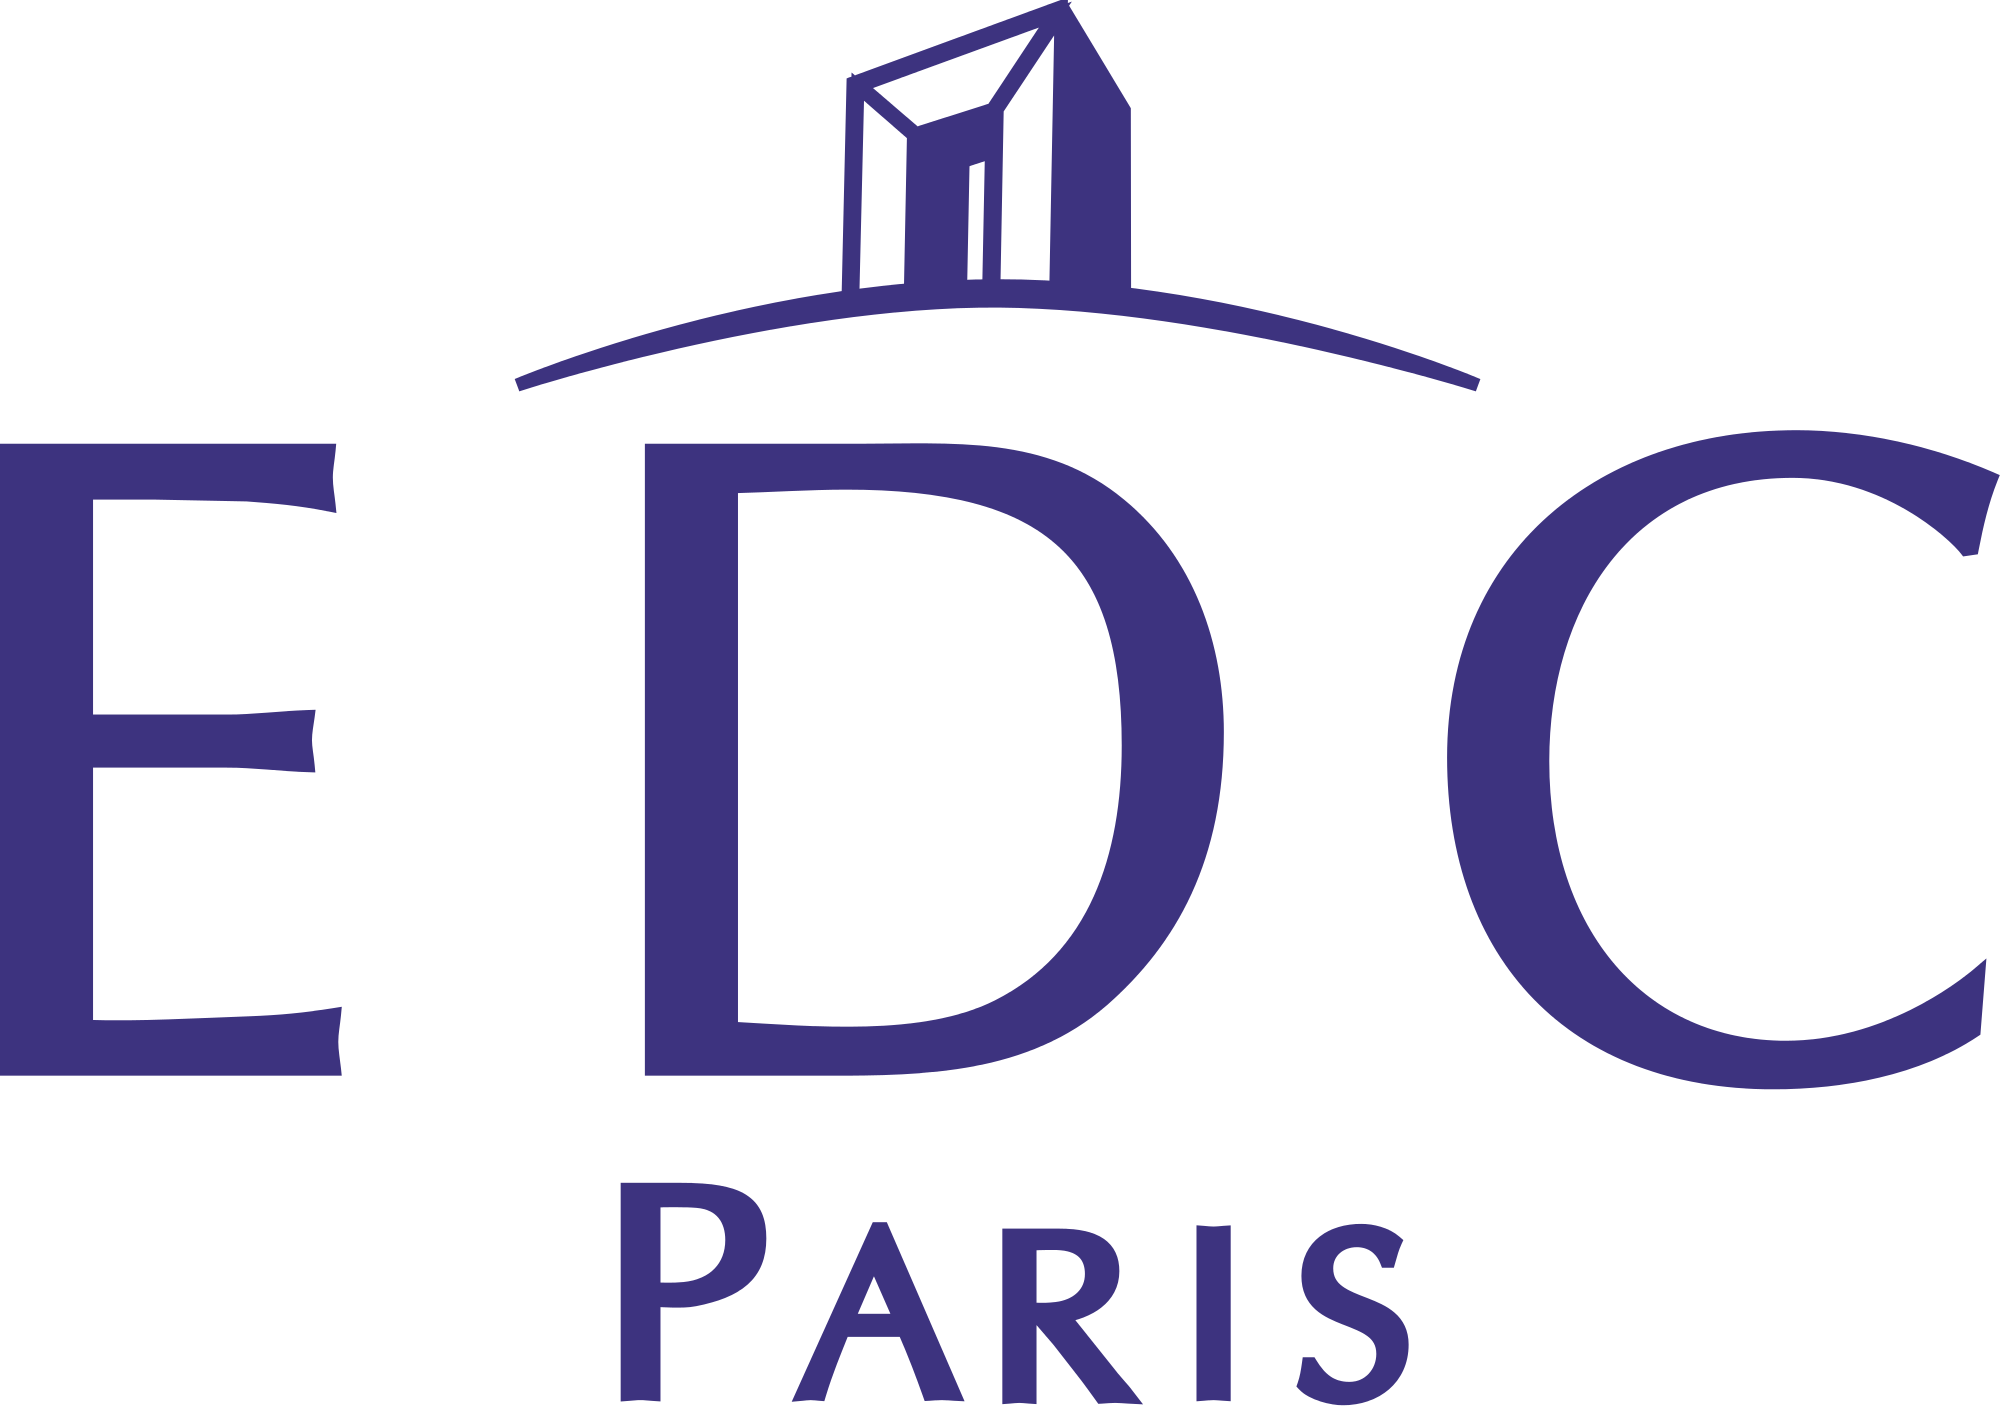 EDC_Paris_Business_School_logo.svg.png